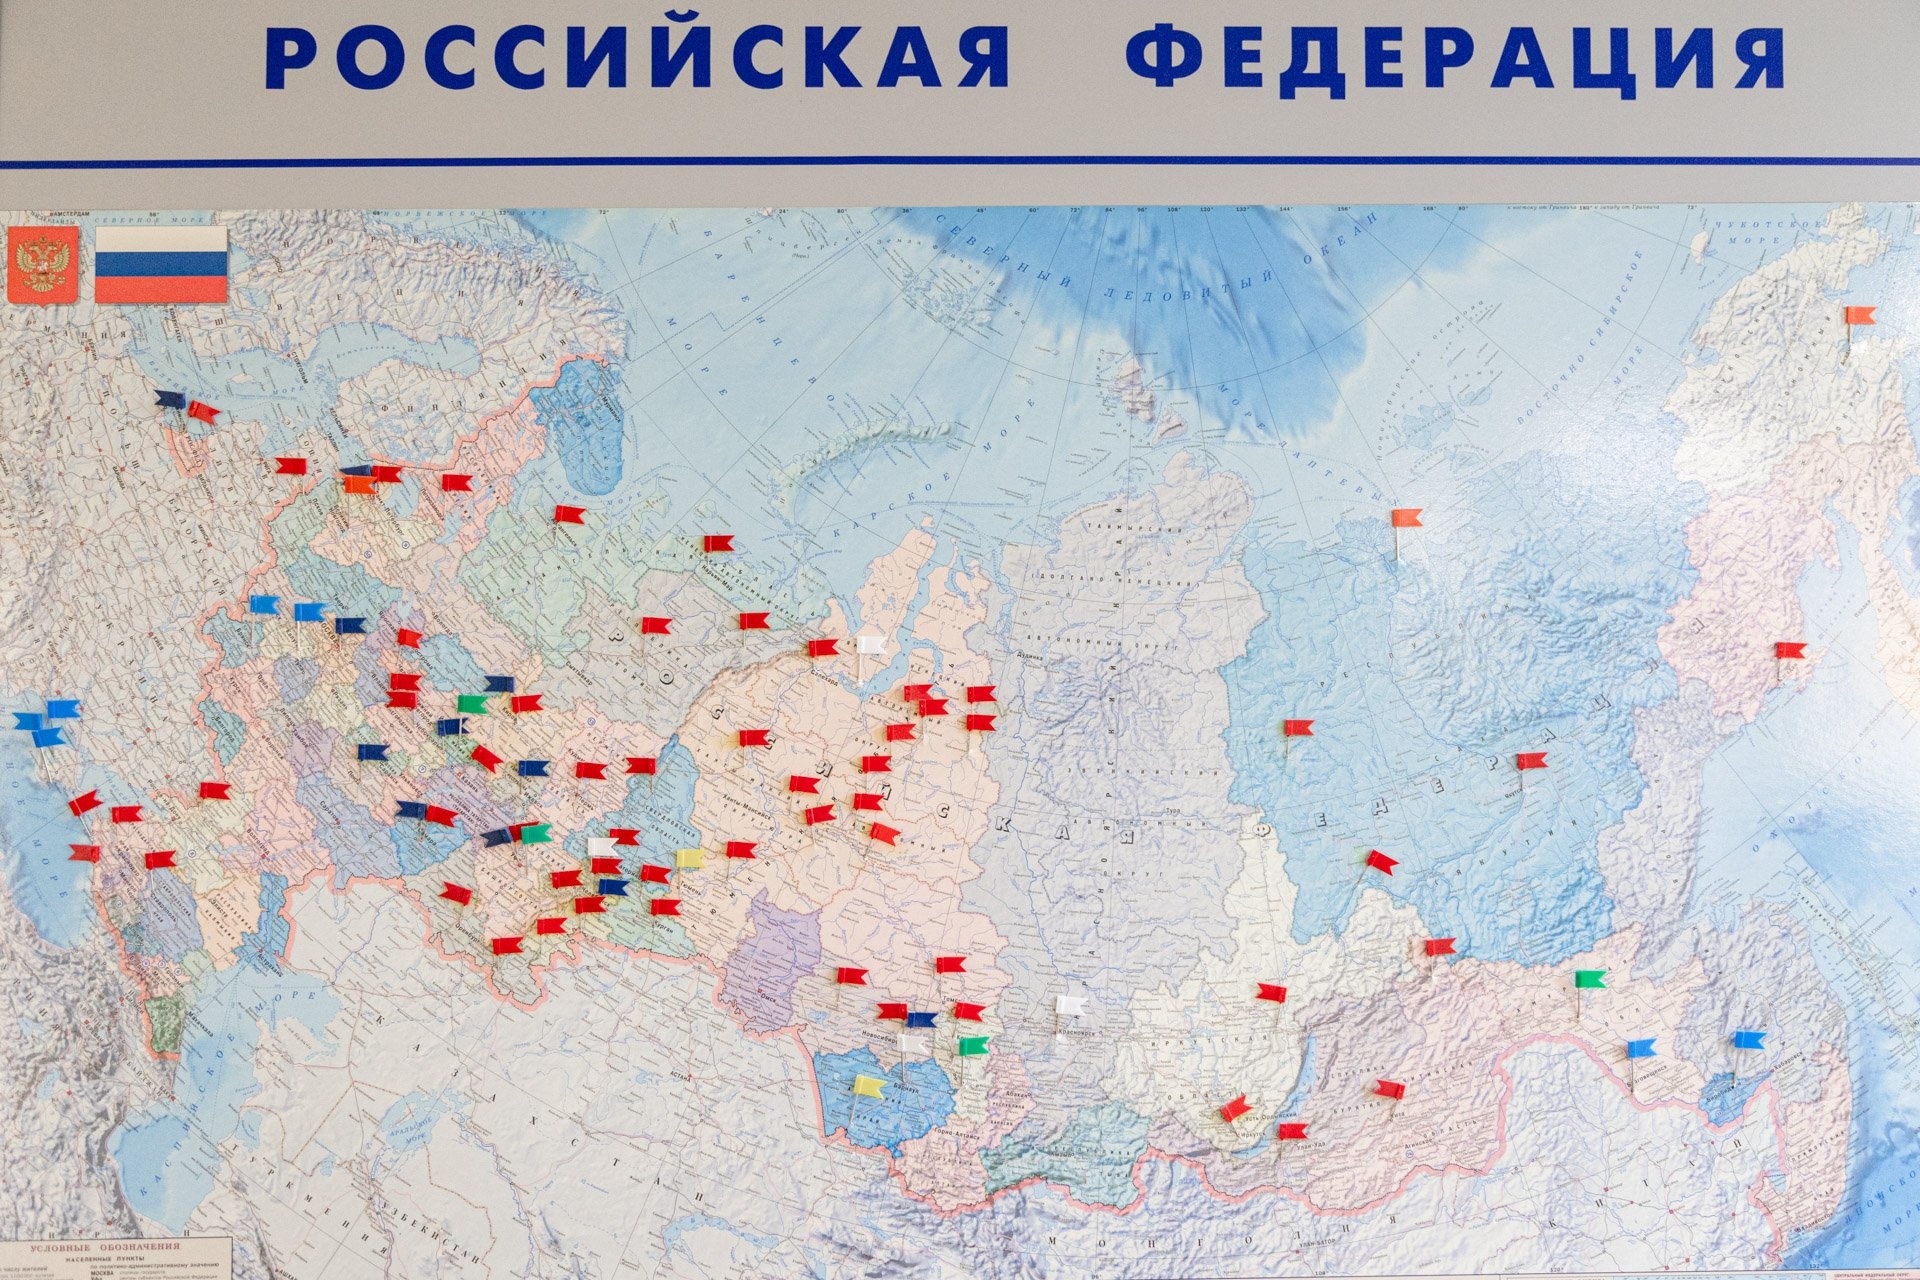 Компания работает на всей территории РФ — от Калининграда до Чукотки